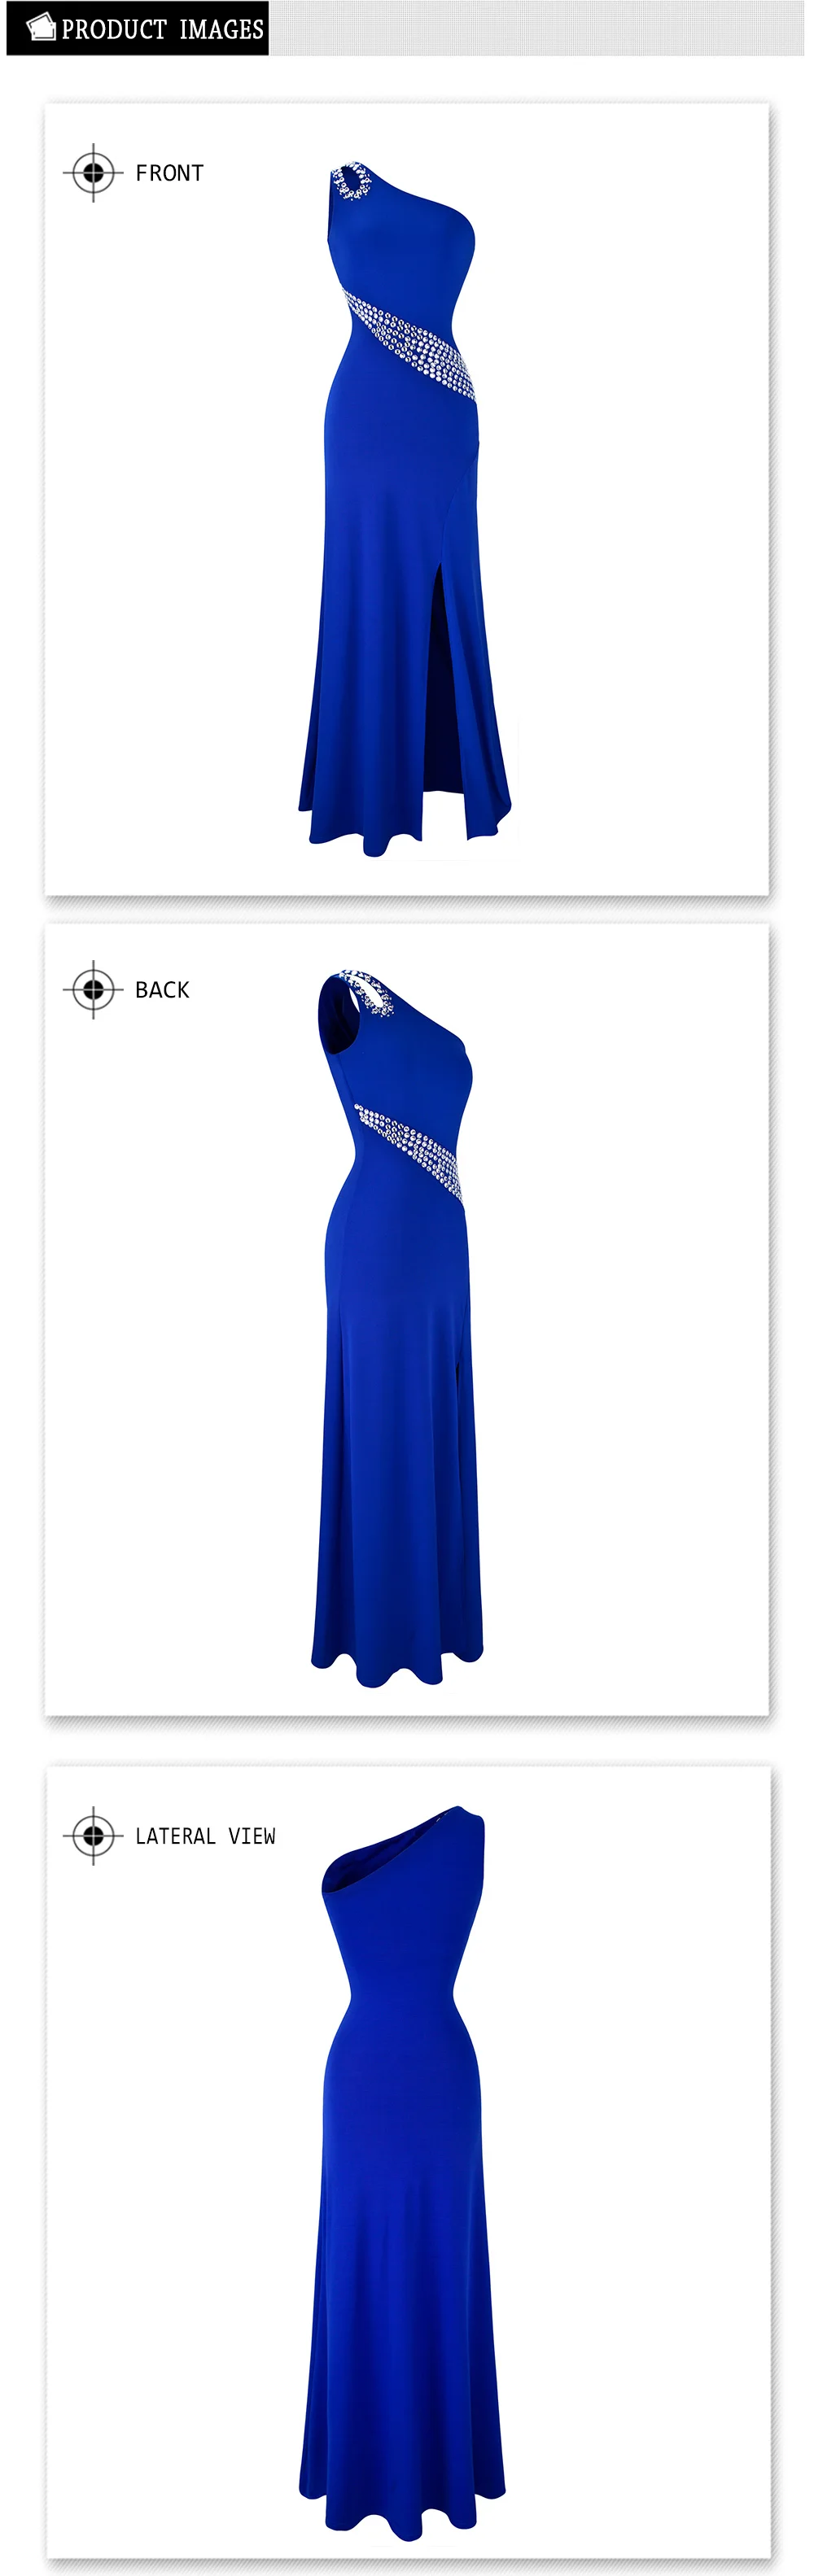 Женское дл.веч.платье, с бисером, Angel-Fashions, синее длинное вечернее платье с одним открытым плечом и разрезами, расшитое бисером, модель 075 411